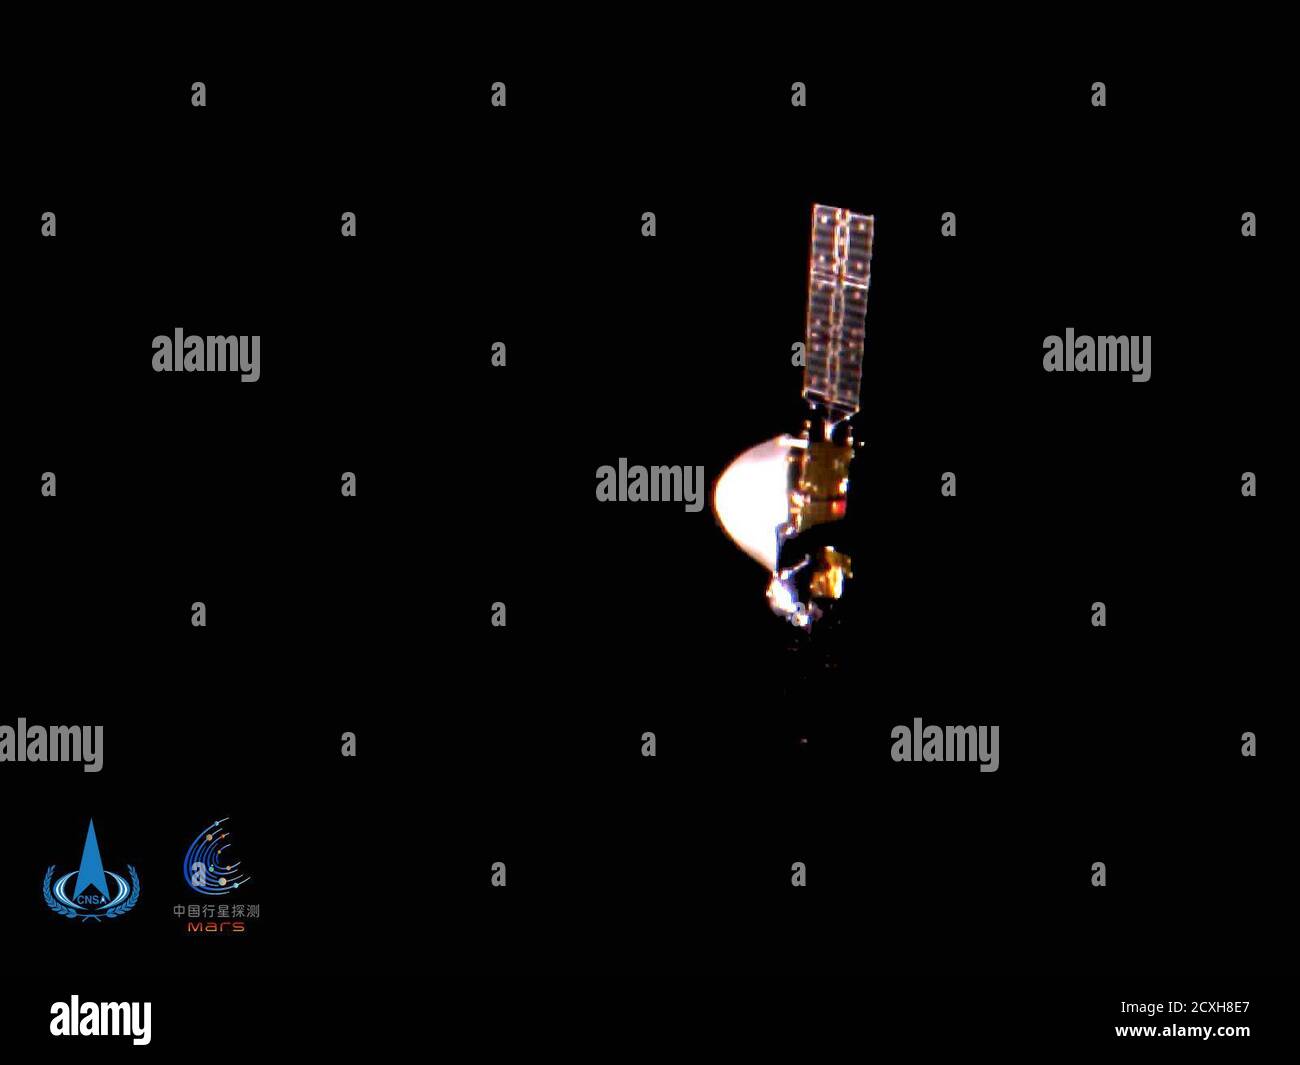 (201001) -- PEKING, 1. Oktober 2020 (Xinhua) -- die China National Space Administration (CNSA) veröffentlicht Mittelflugbilder der Mars-Sonde Tianwen-1, da der Nationalfeiertag des Landes mit dem Mid-Autumn Festival am 1. Oktober 2020 zusammenfällt. Es ist das erste Mal, dass Tianwen-1 Selfies gemacht hat. (China National Space Administration / Handout via Xinhua) Stockfoto